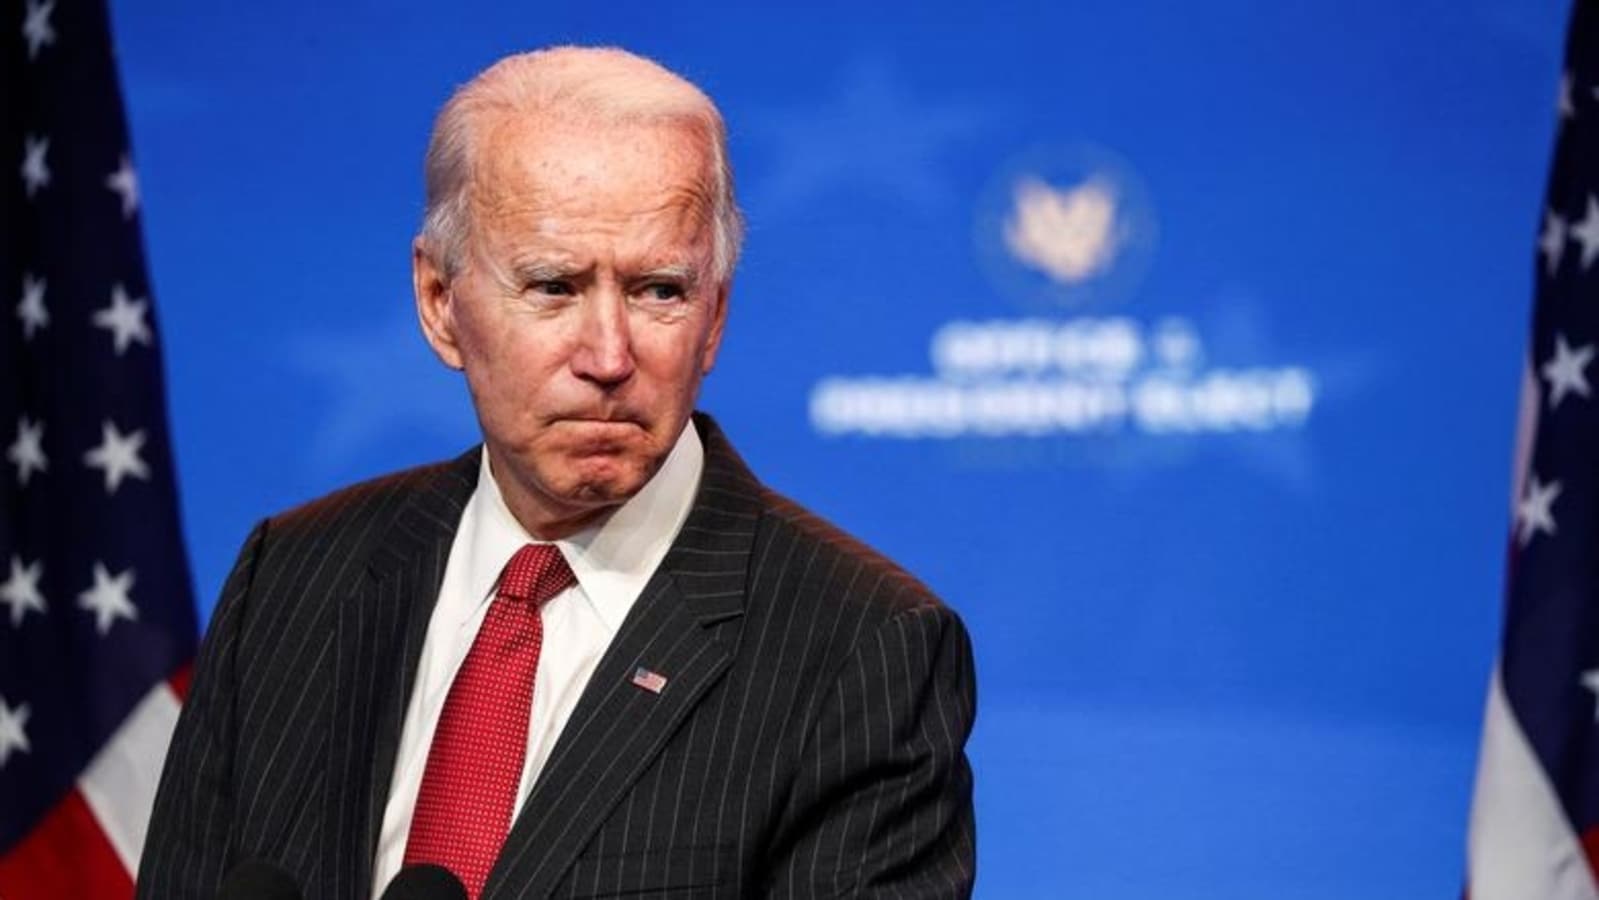 Biden to travel to Poland Friday to discuss Ukraine war